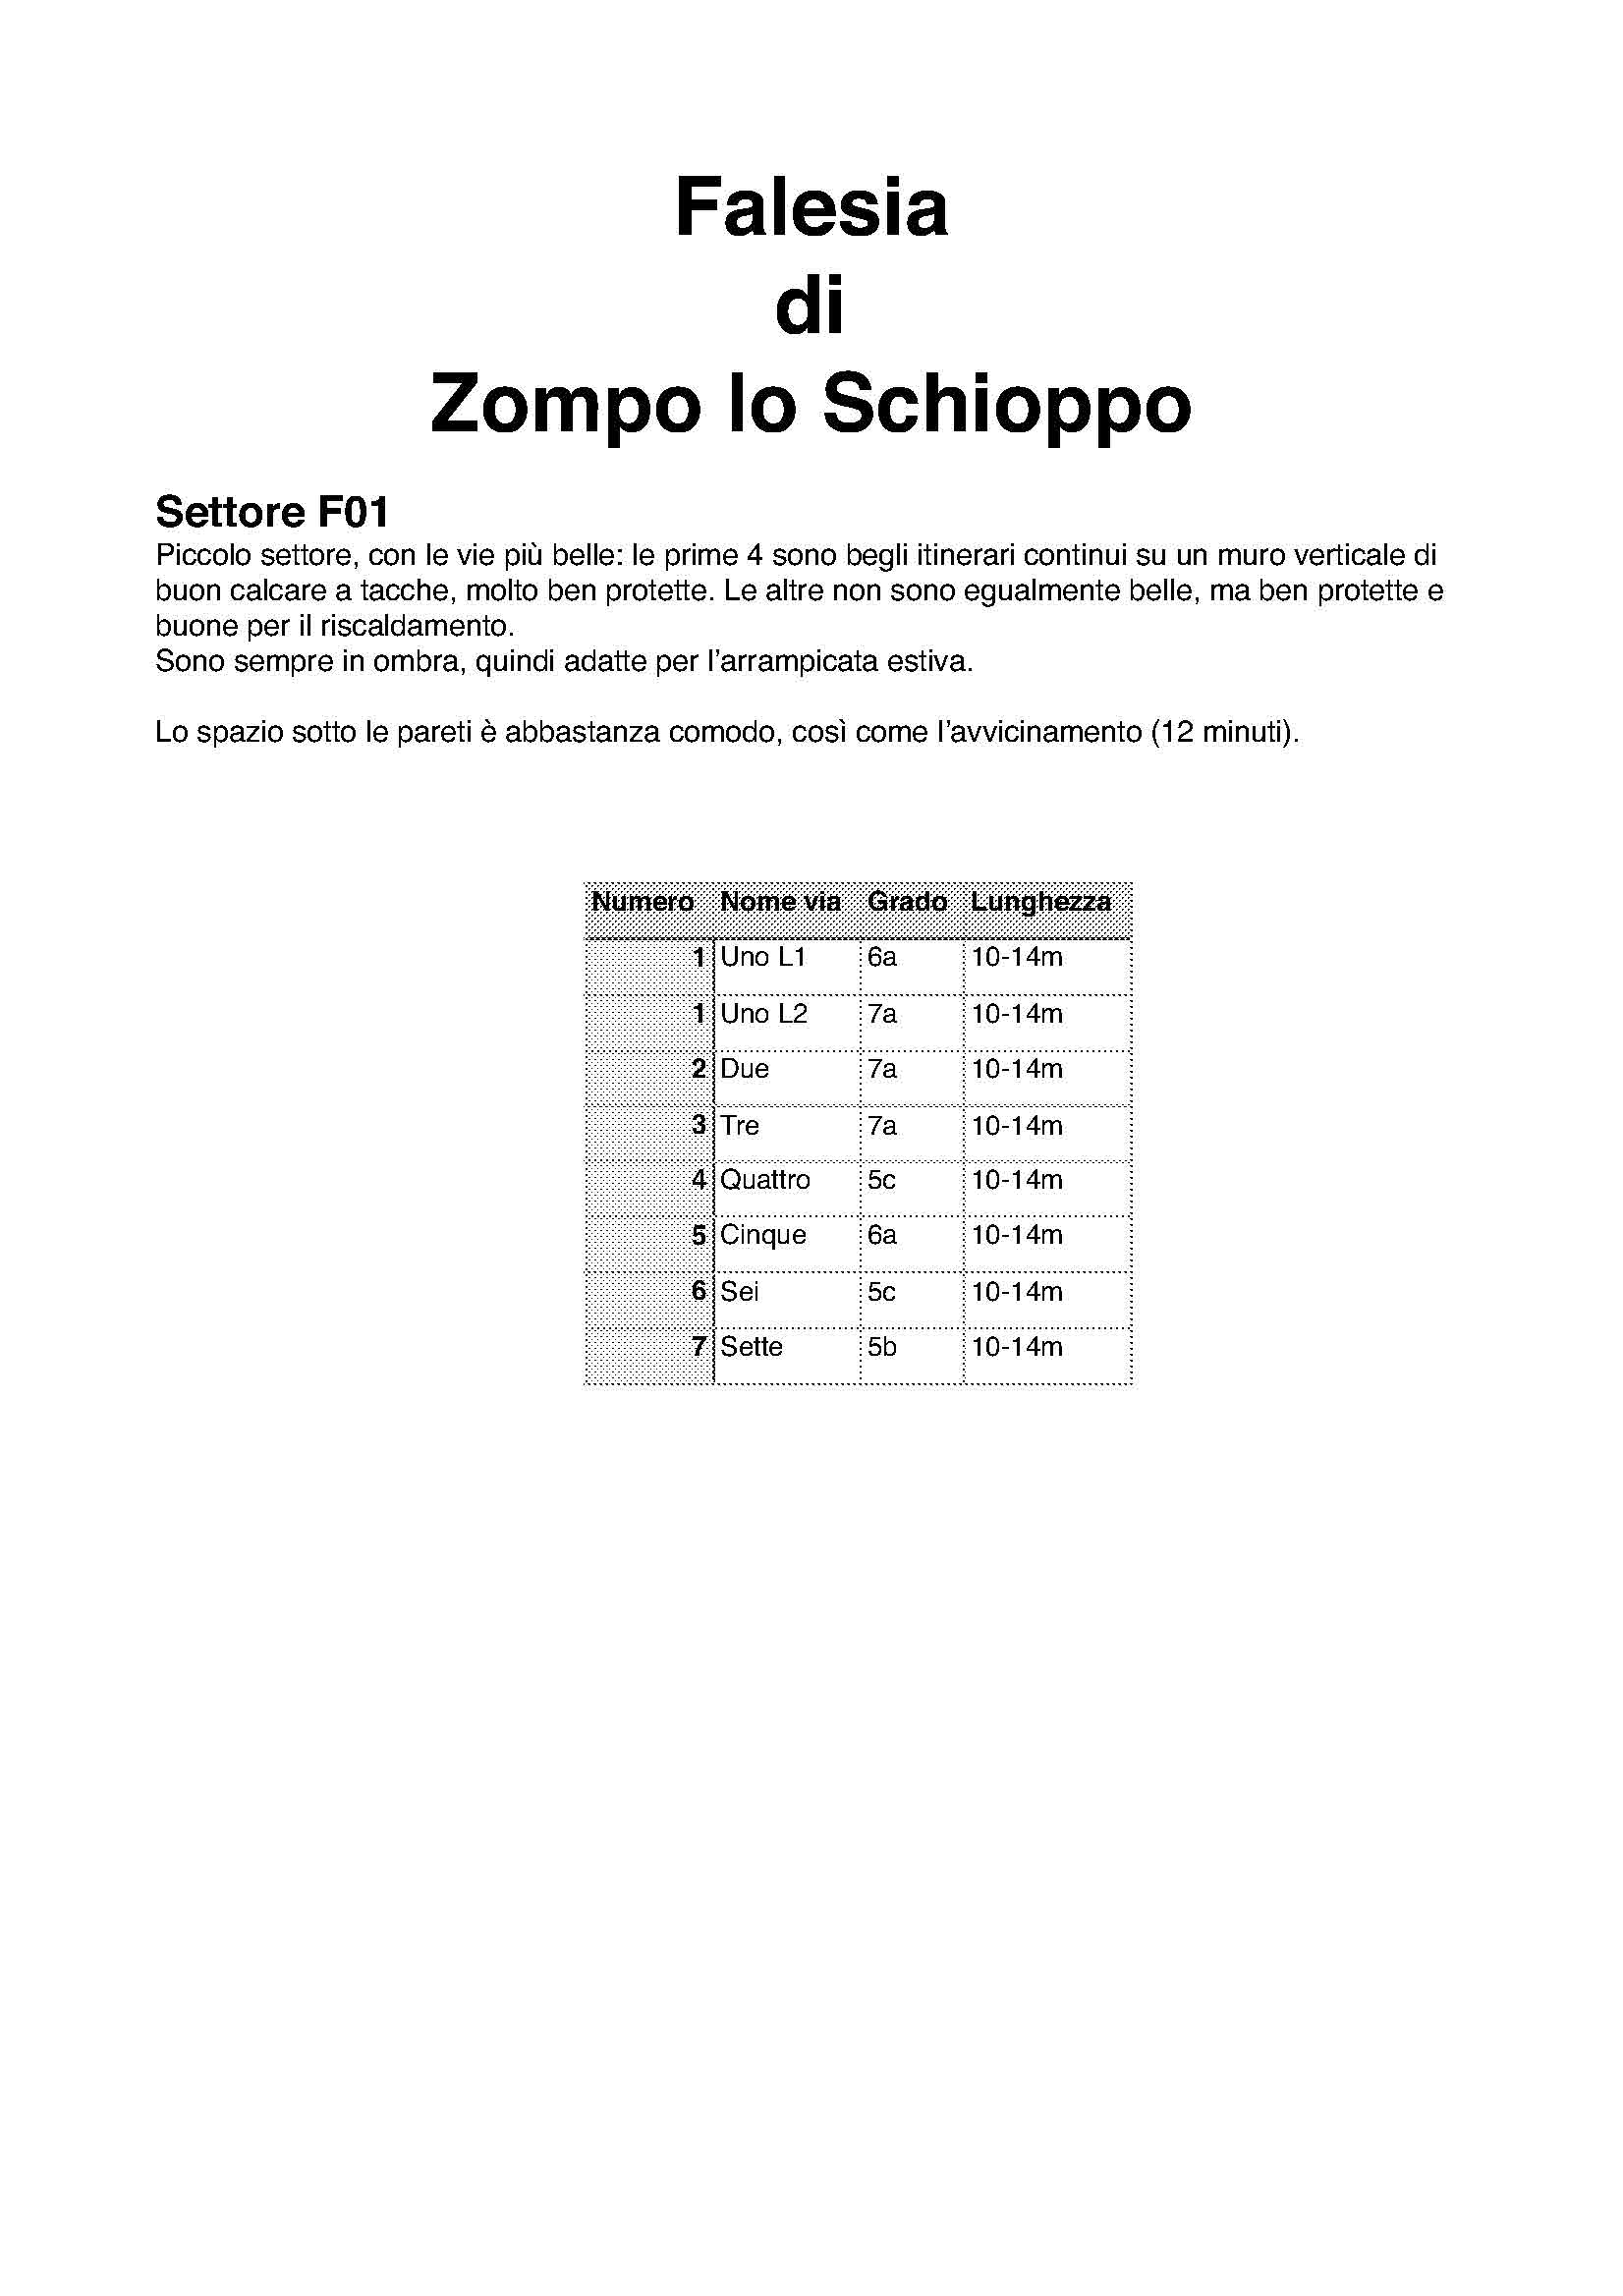 S1 falesia Zompo lo Schioppo